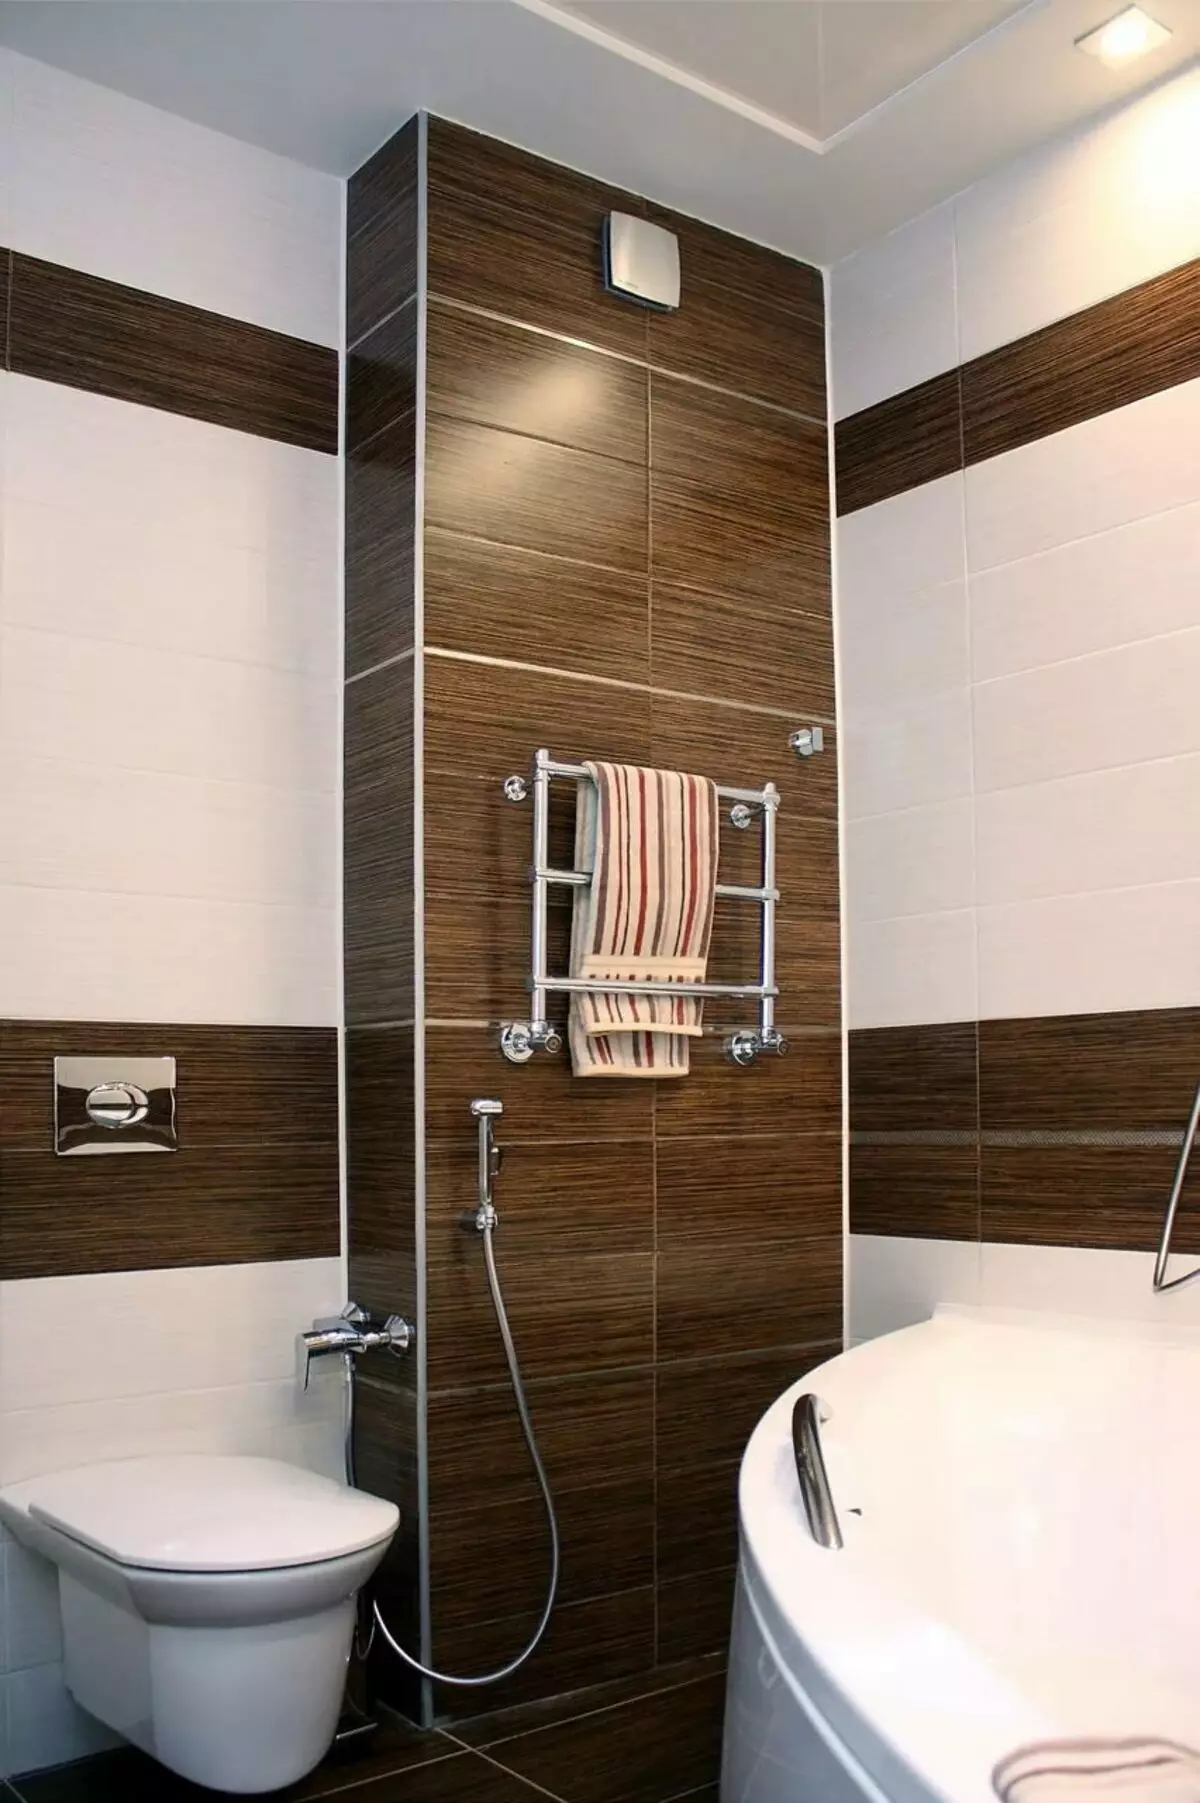 Μπάνιο στο Χρουστσόφ (97 φωτογραφίες): Μικρή σχεδίαση δωματίου, επιλογές φινιρίσματος, τυποποιημένα μικρά δωμάτια Εσωτερικά παραδείγματα 10144_72